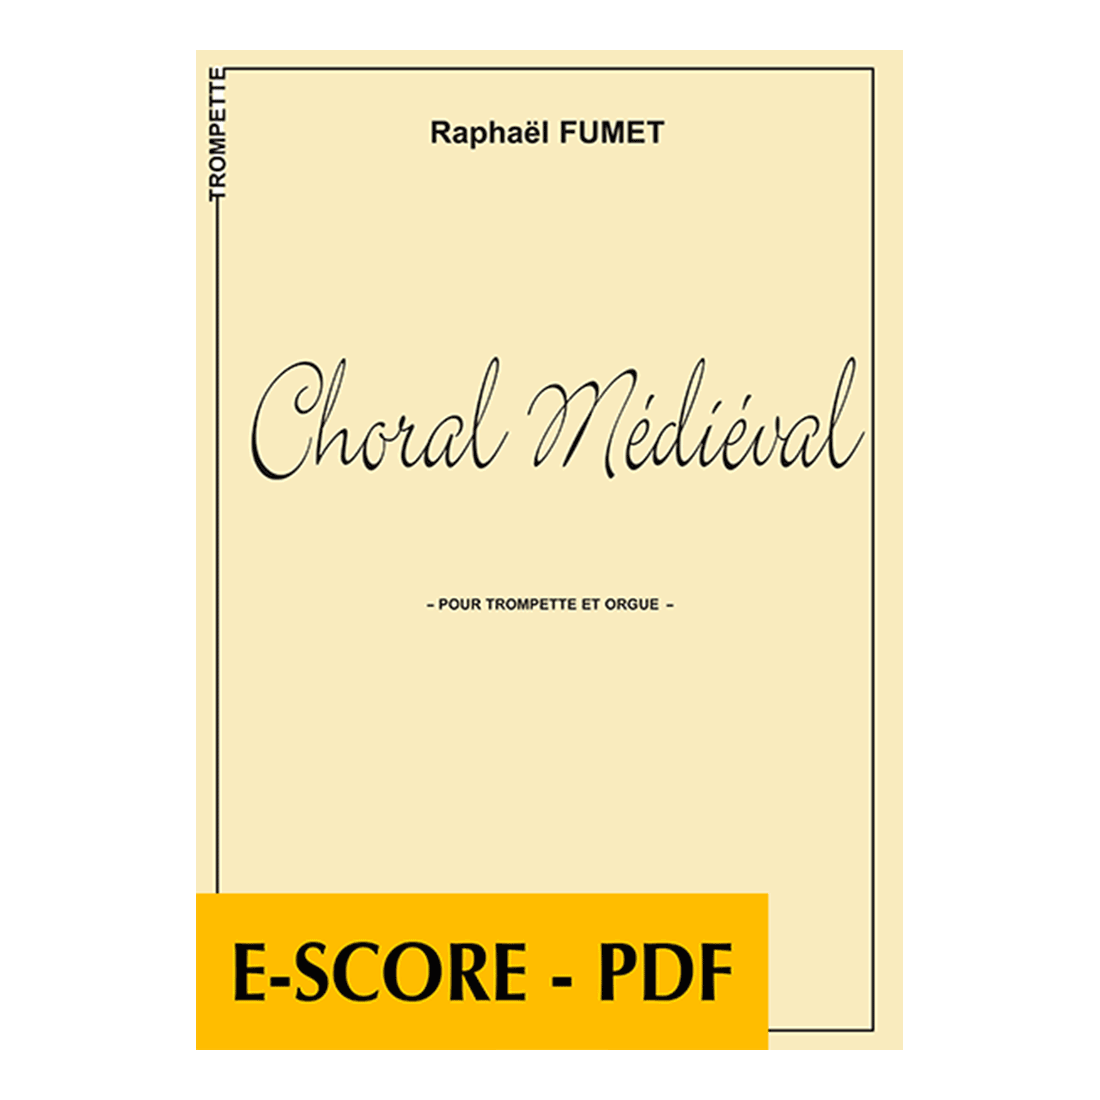 Choral médiéval pour trompette et orgue - E-score PDF